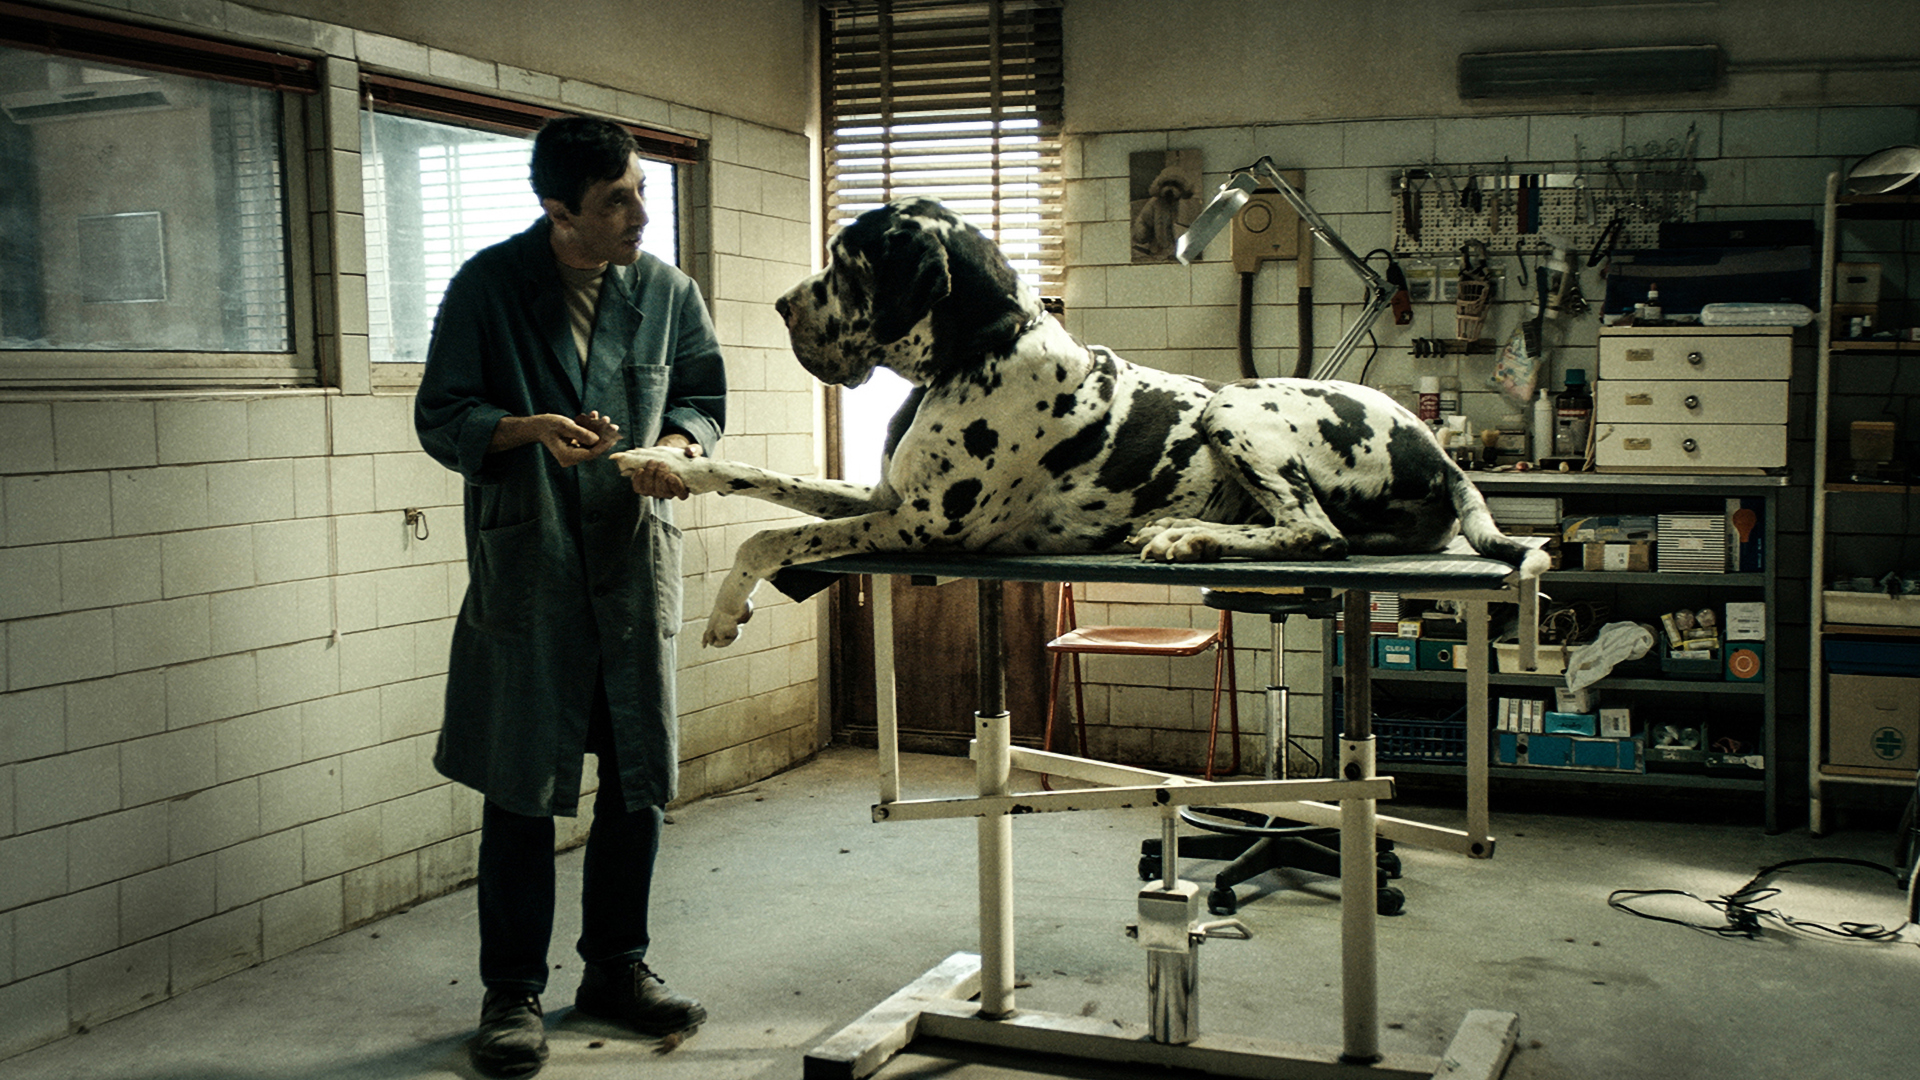 Trailer still frame from Dogman, veterinarian treating dog